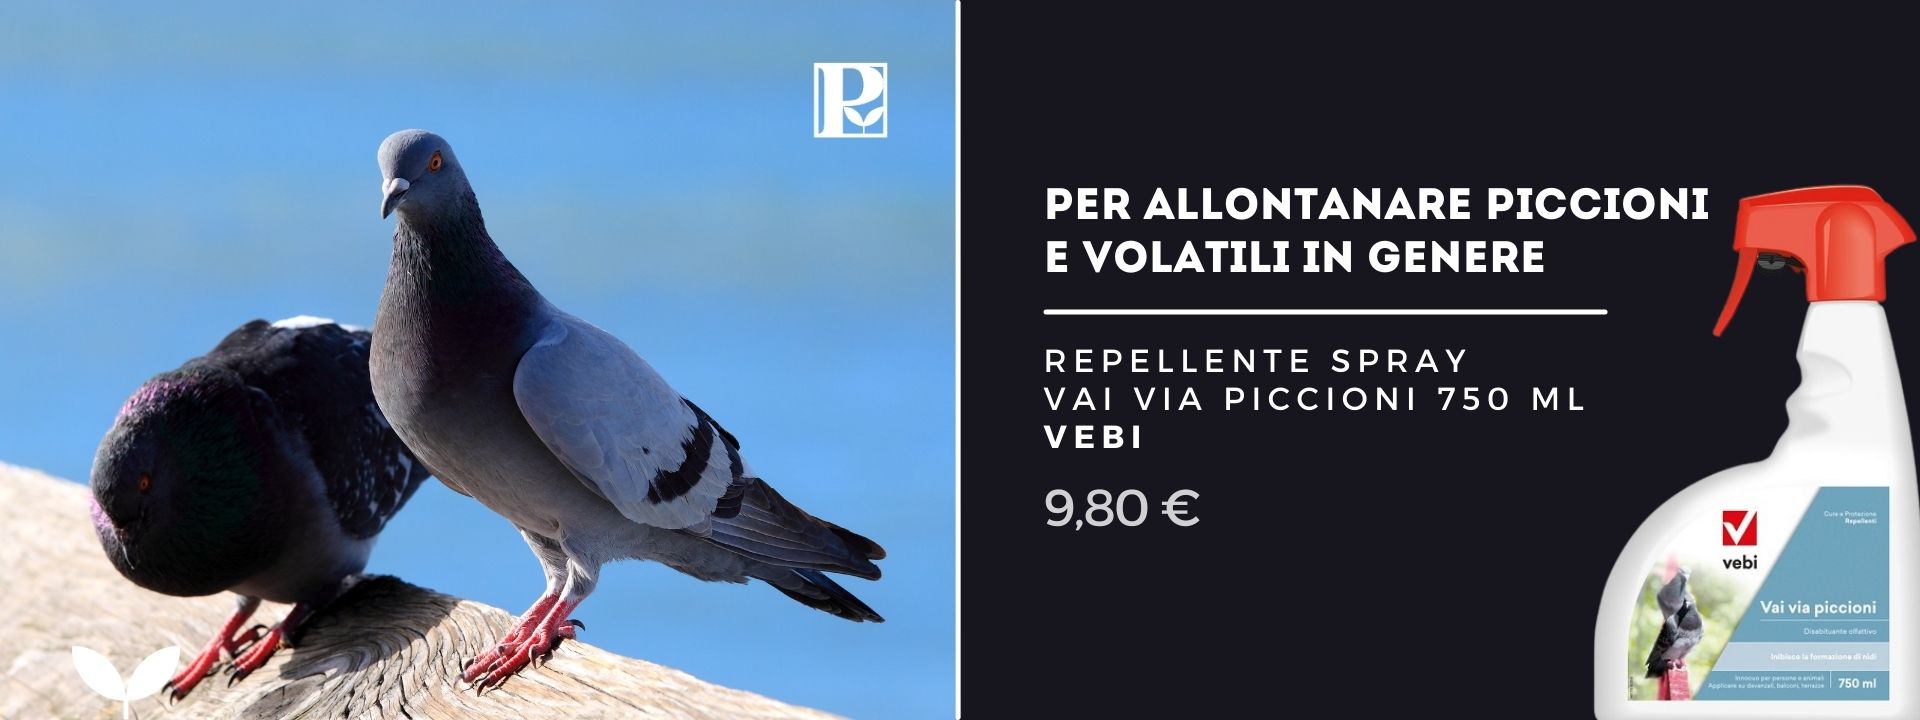 Repellente spray piccioni - Pierucci Agricoltura